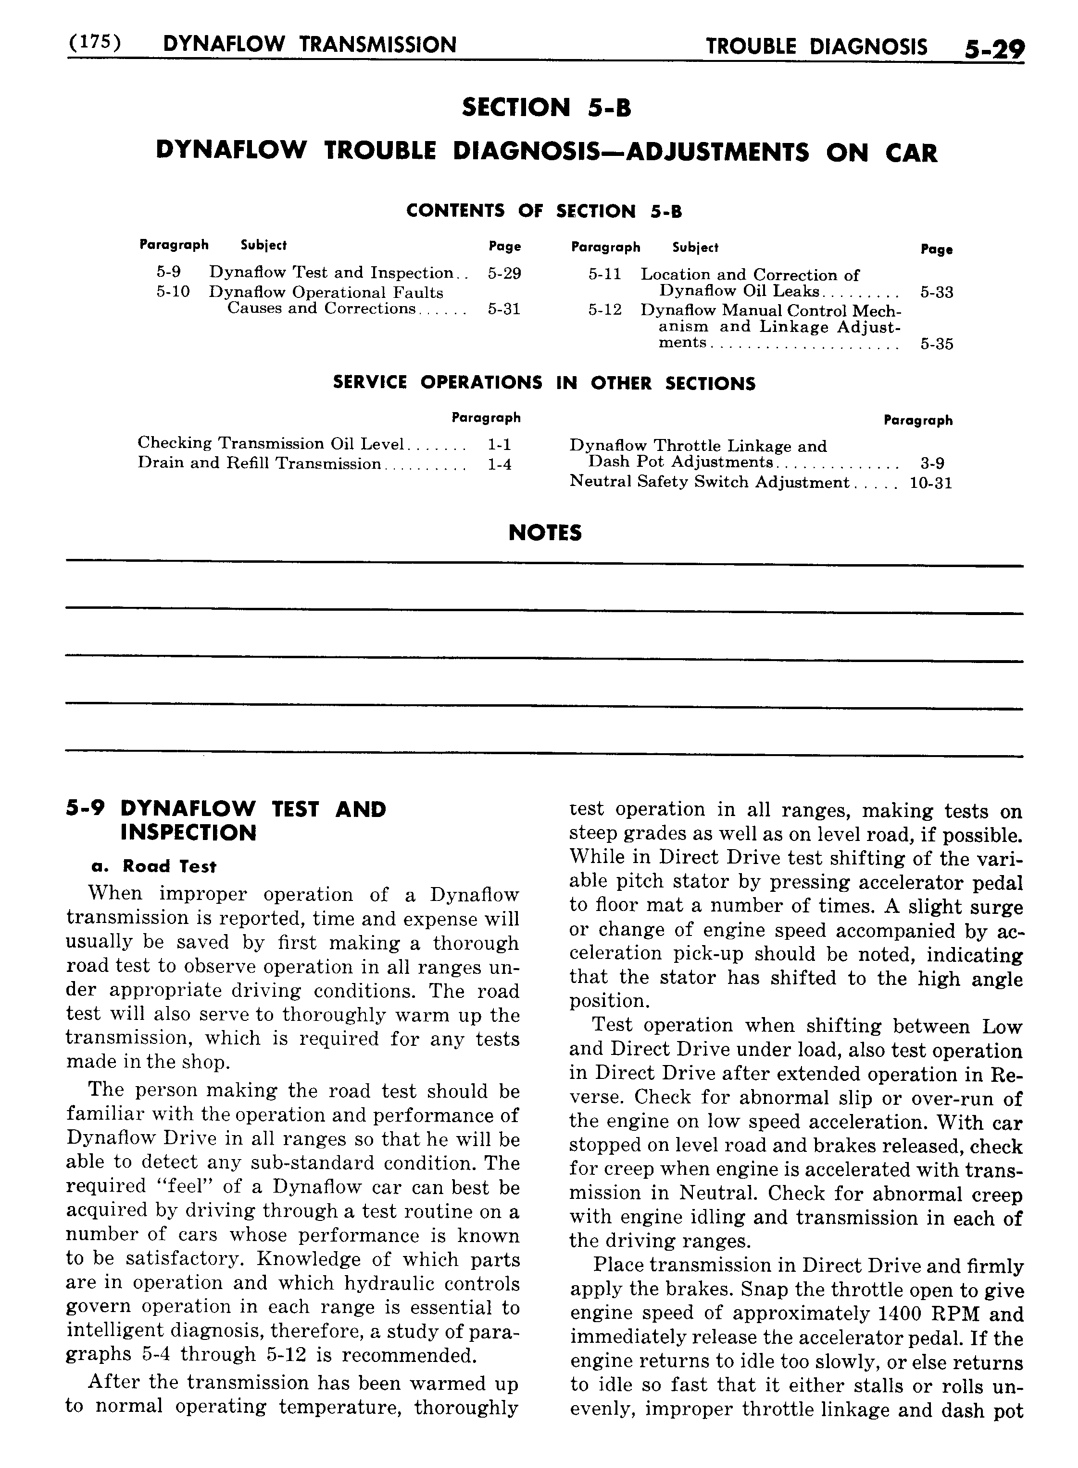 n_06 1956 Buick Shop Manual - Dynaflow-029-029.jpg